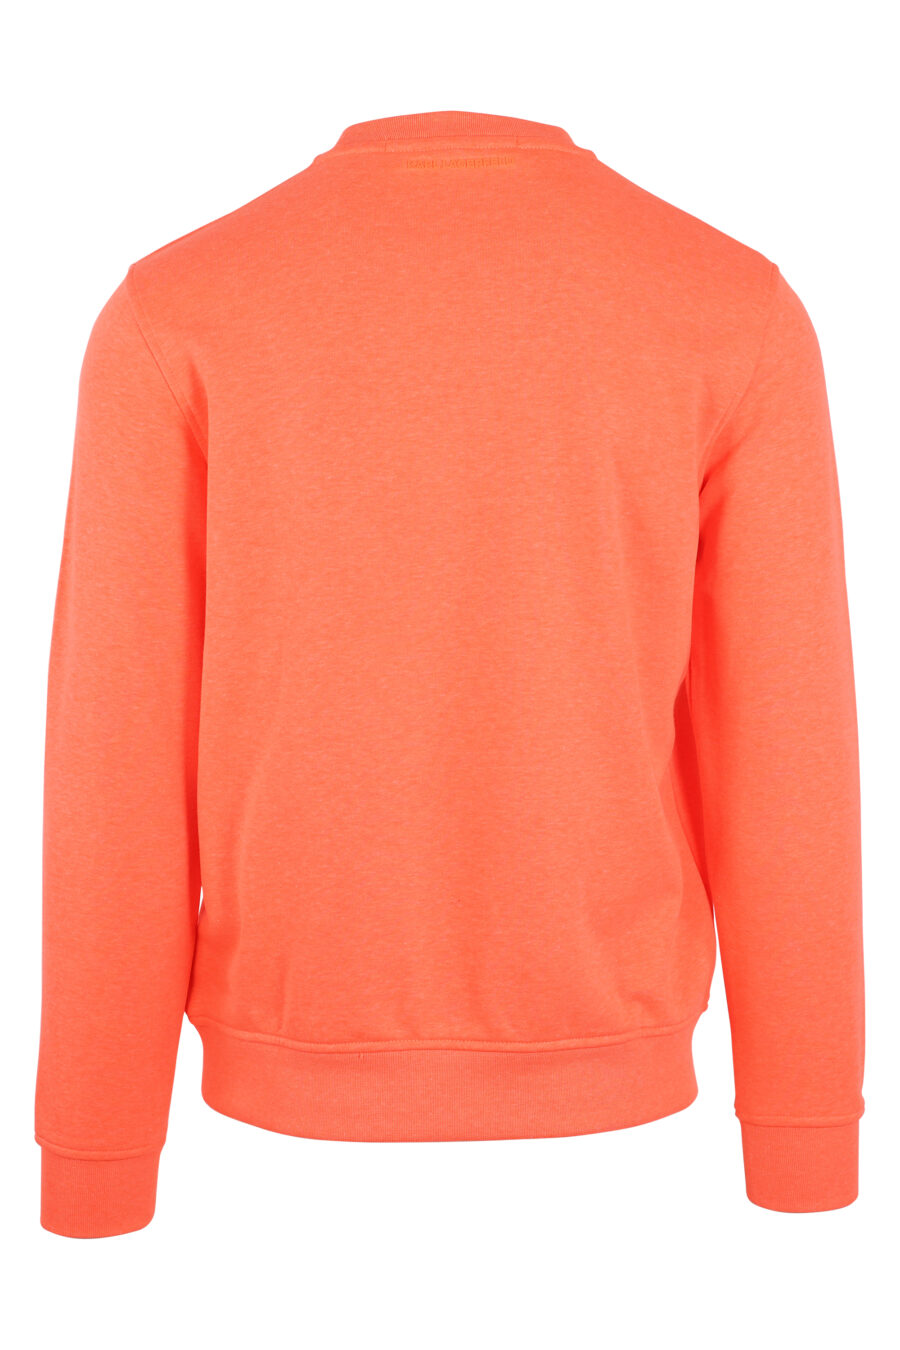 Orange sweatshirt with maxilogo "rue st guillaume" black - IMG 9460